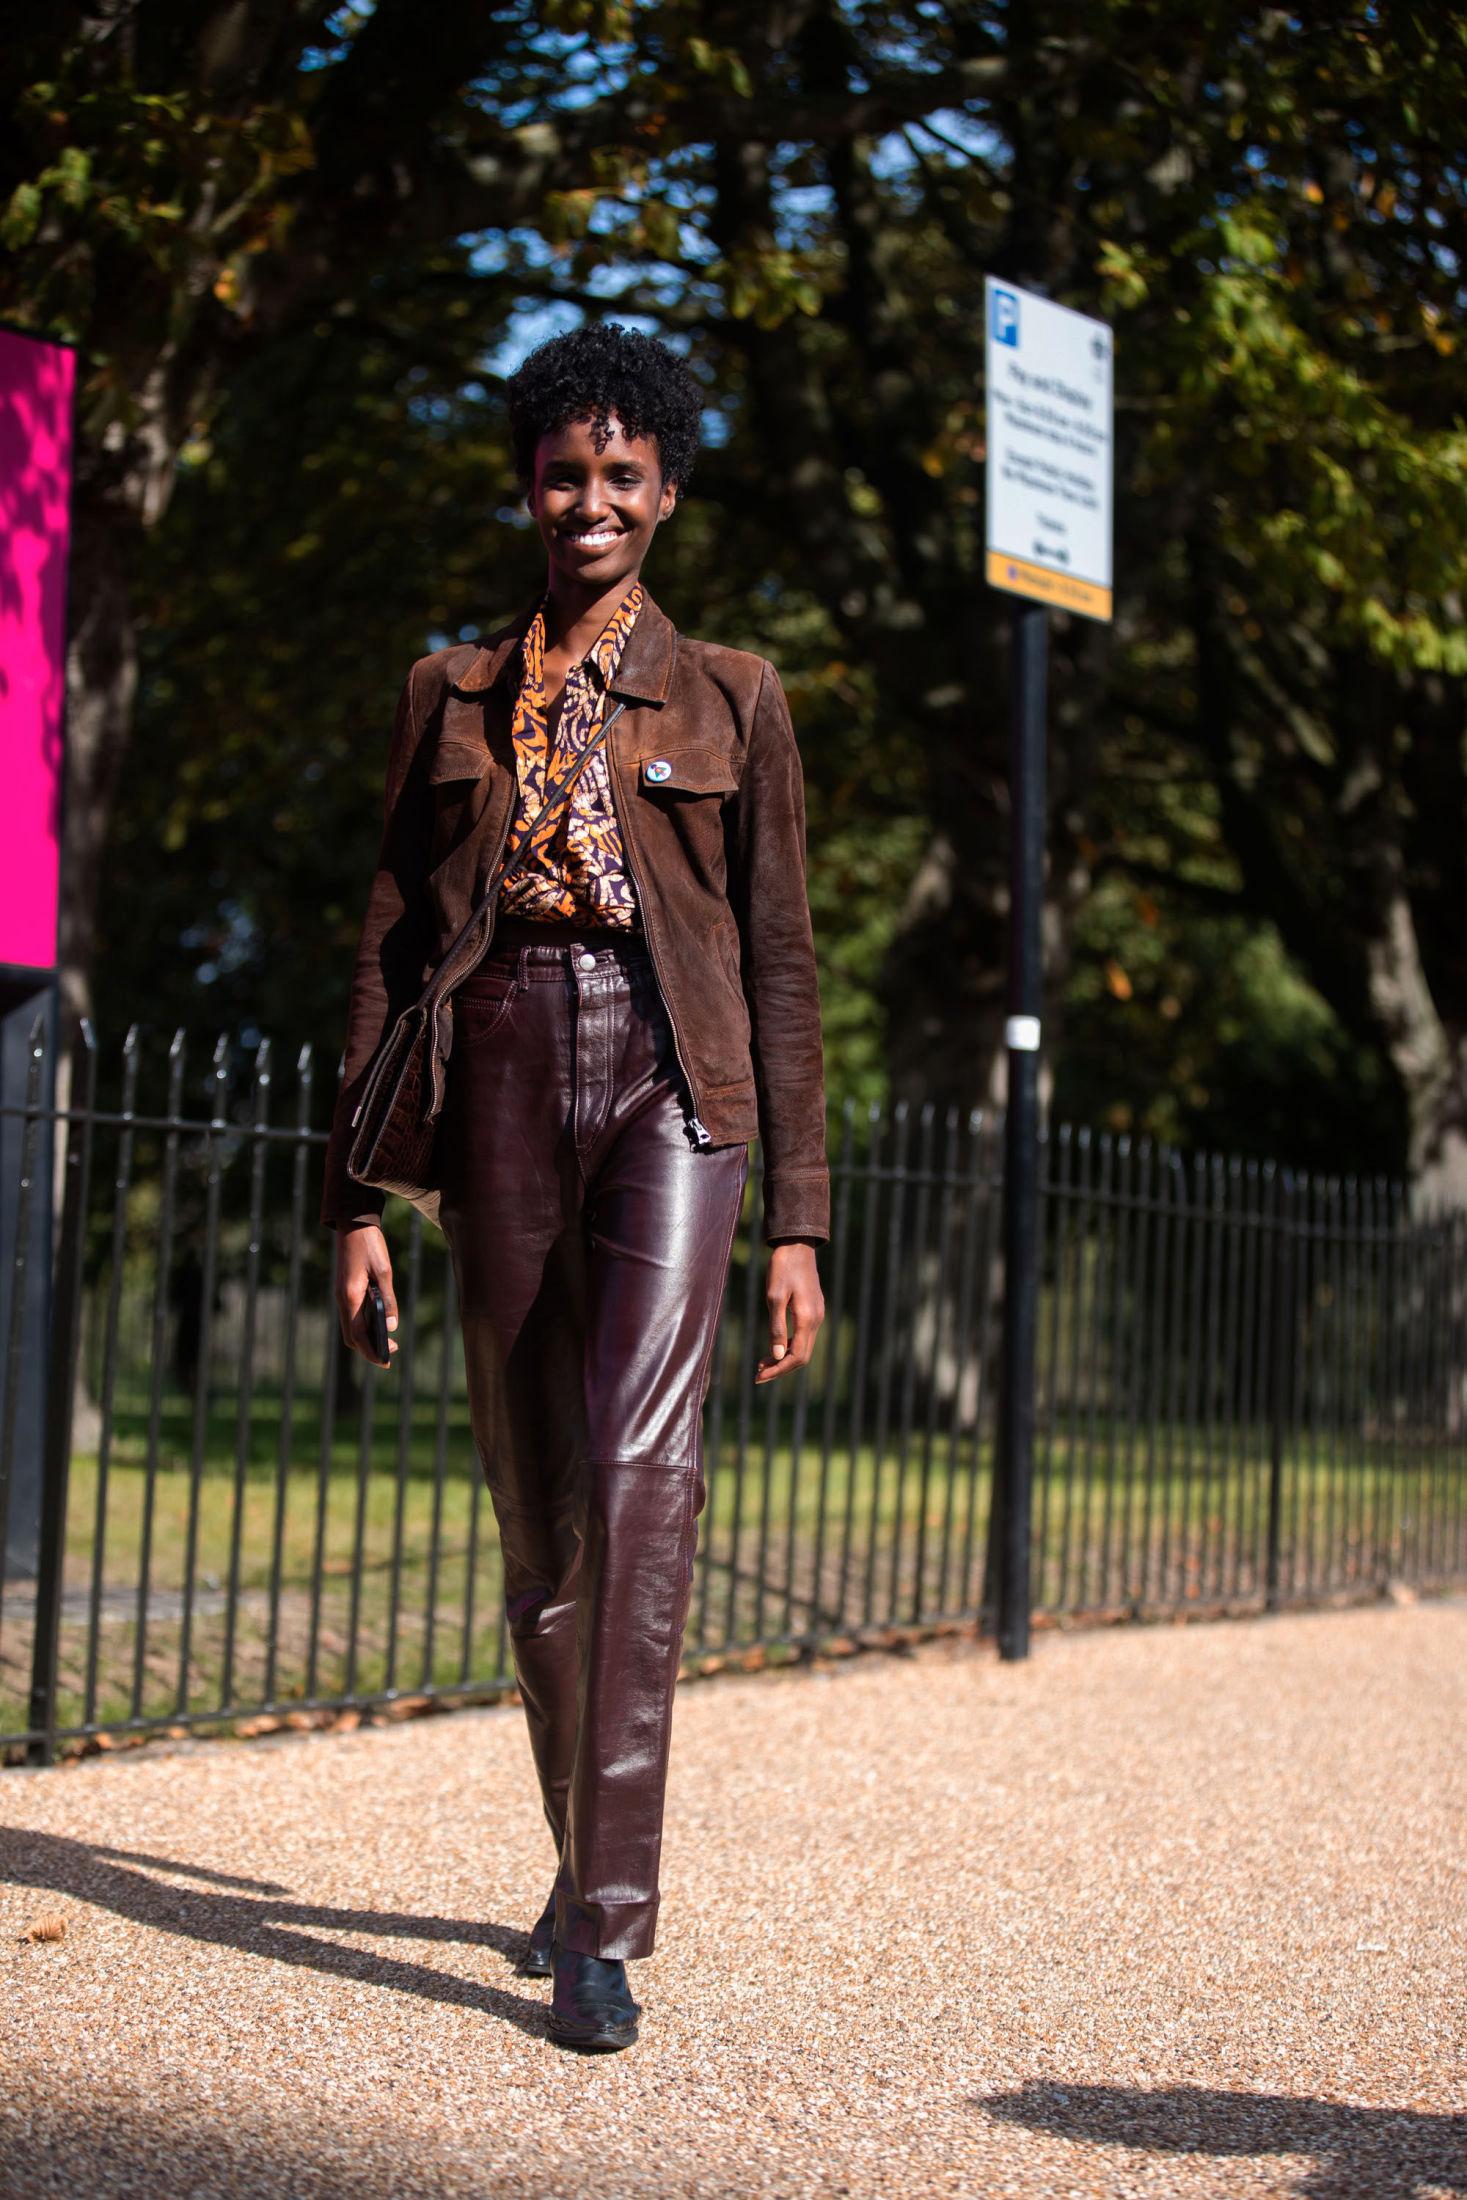 SKINN PÅ SKINN: Modell Bibi Abdulkadir viser hvordan ulike typer skinn kan kombineres under London Fashion Week. Foto: Getty Images.